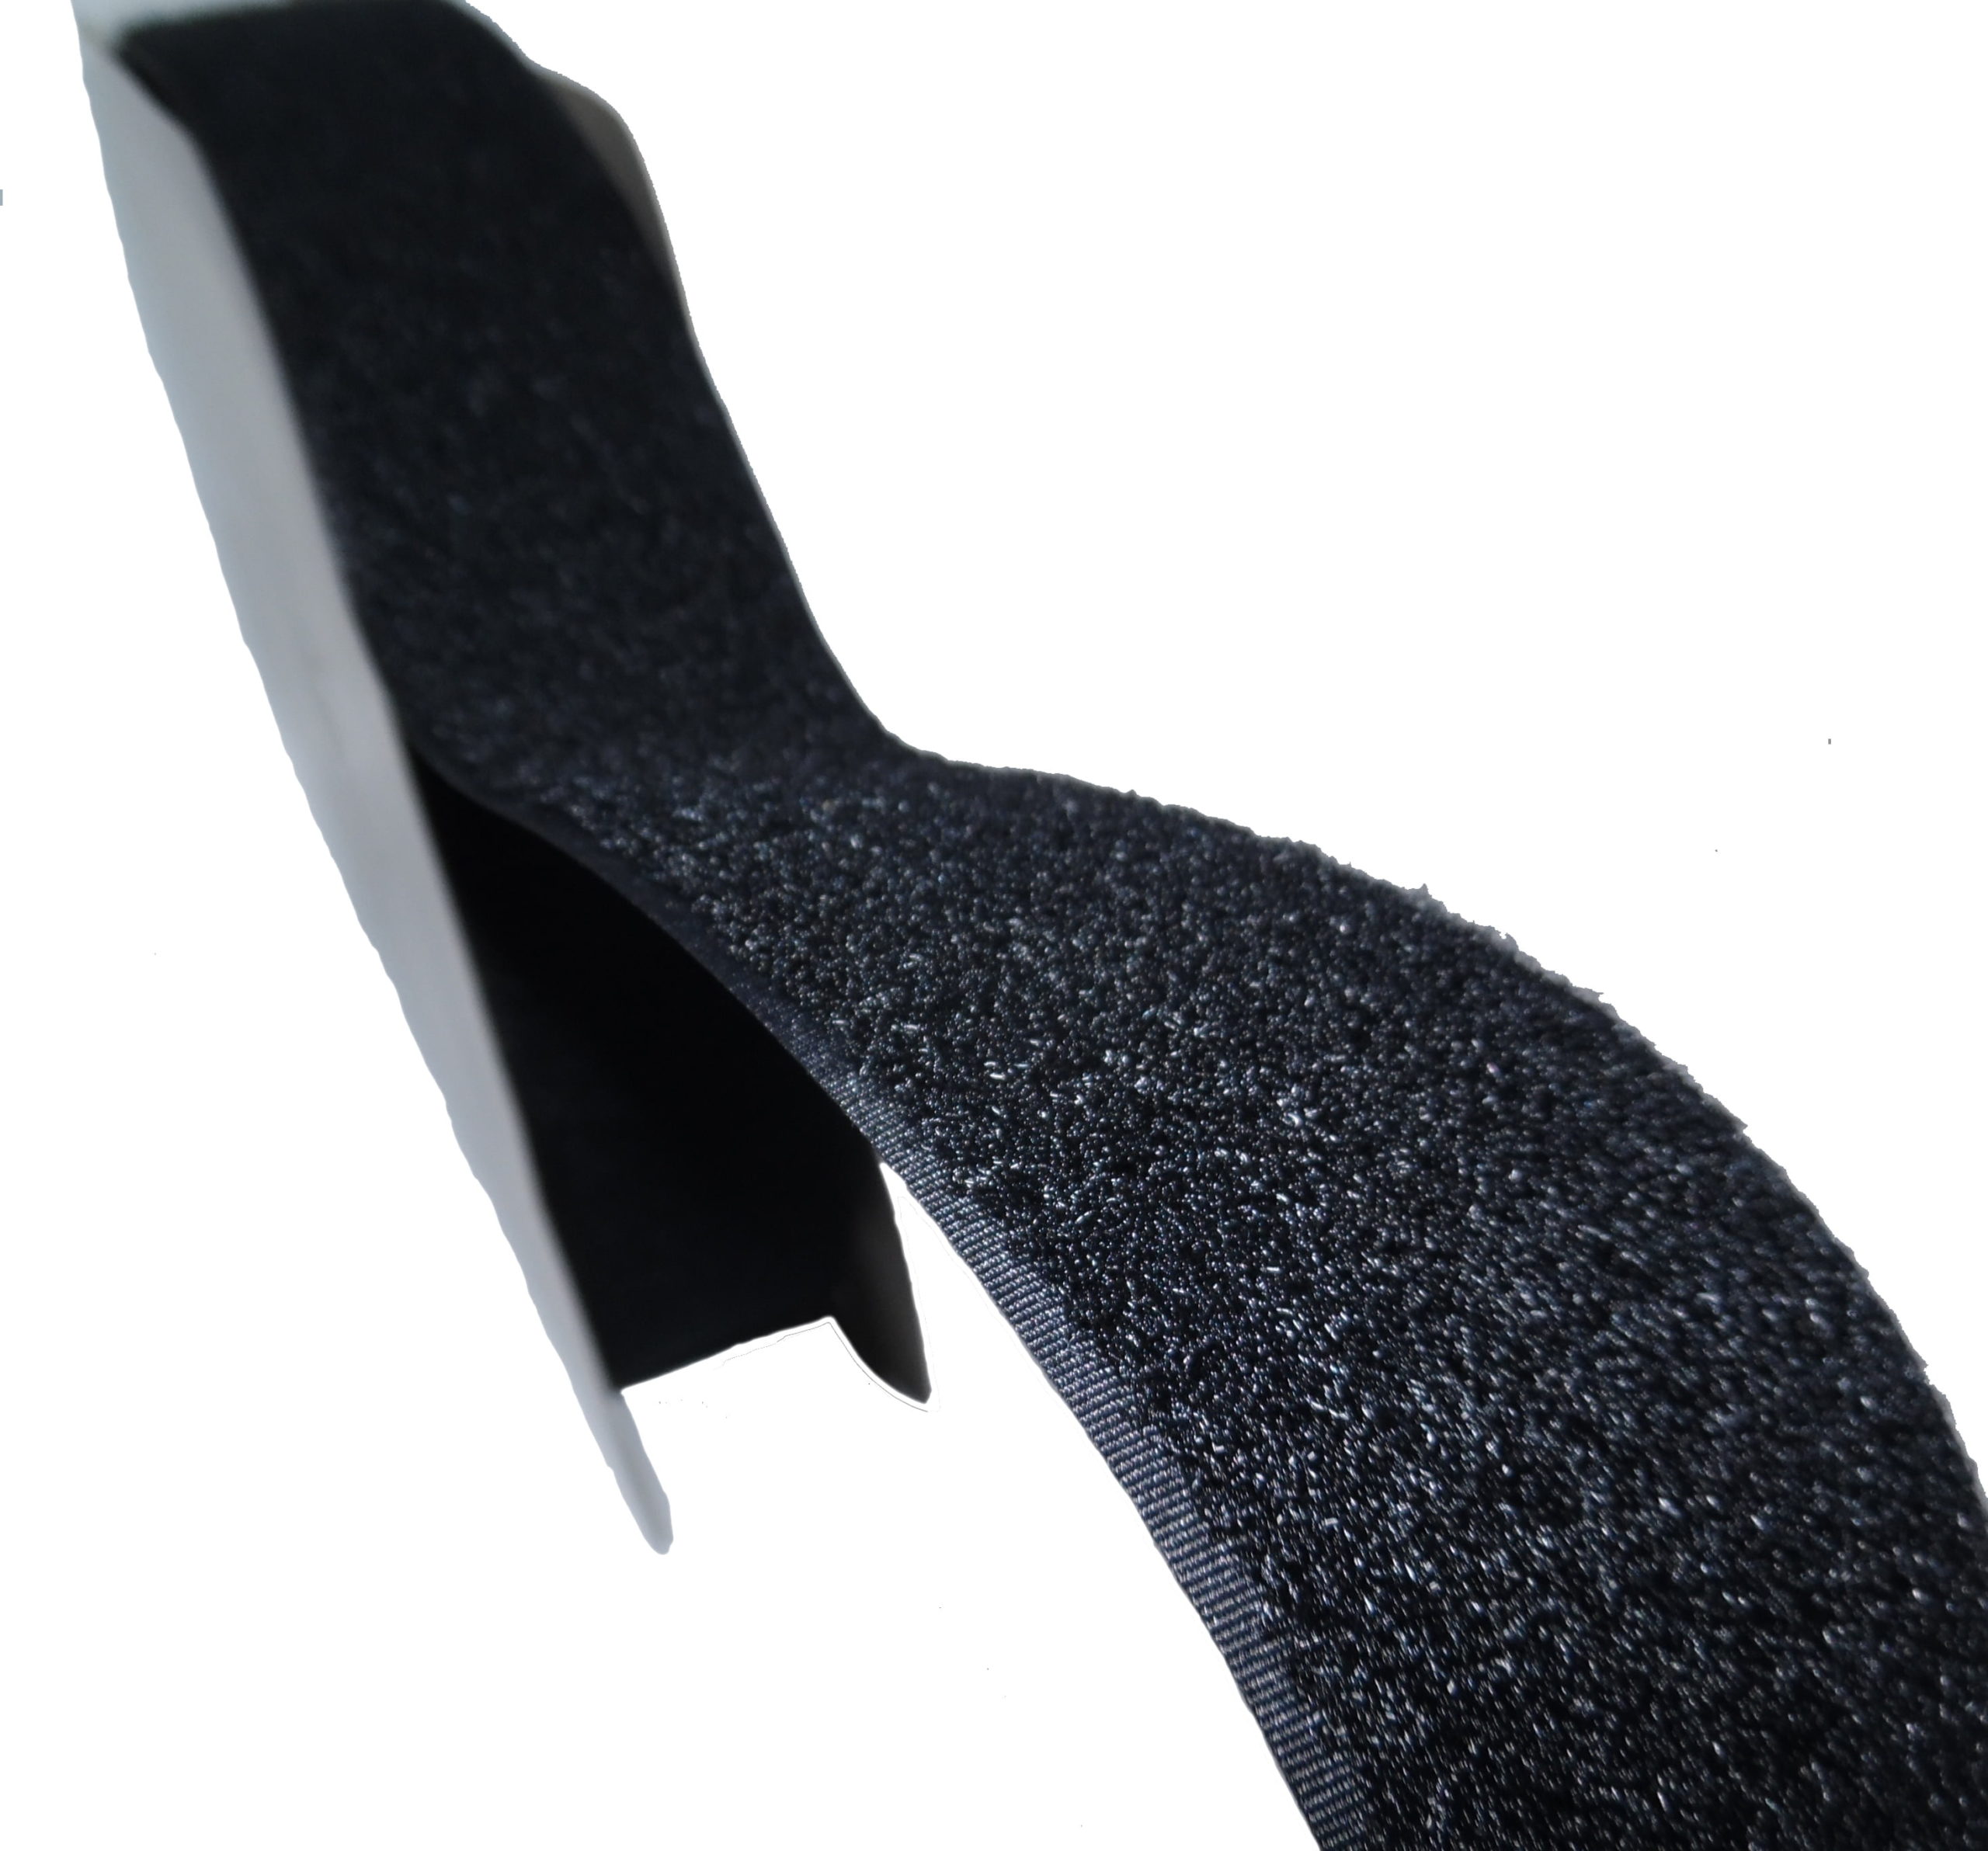 Fermetures velcro noir - Sans colle 50cm Velcro à coudre largeur 25mm